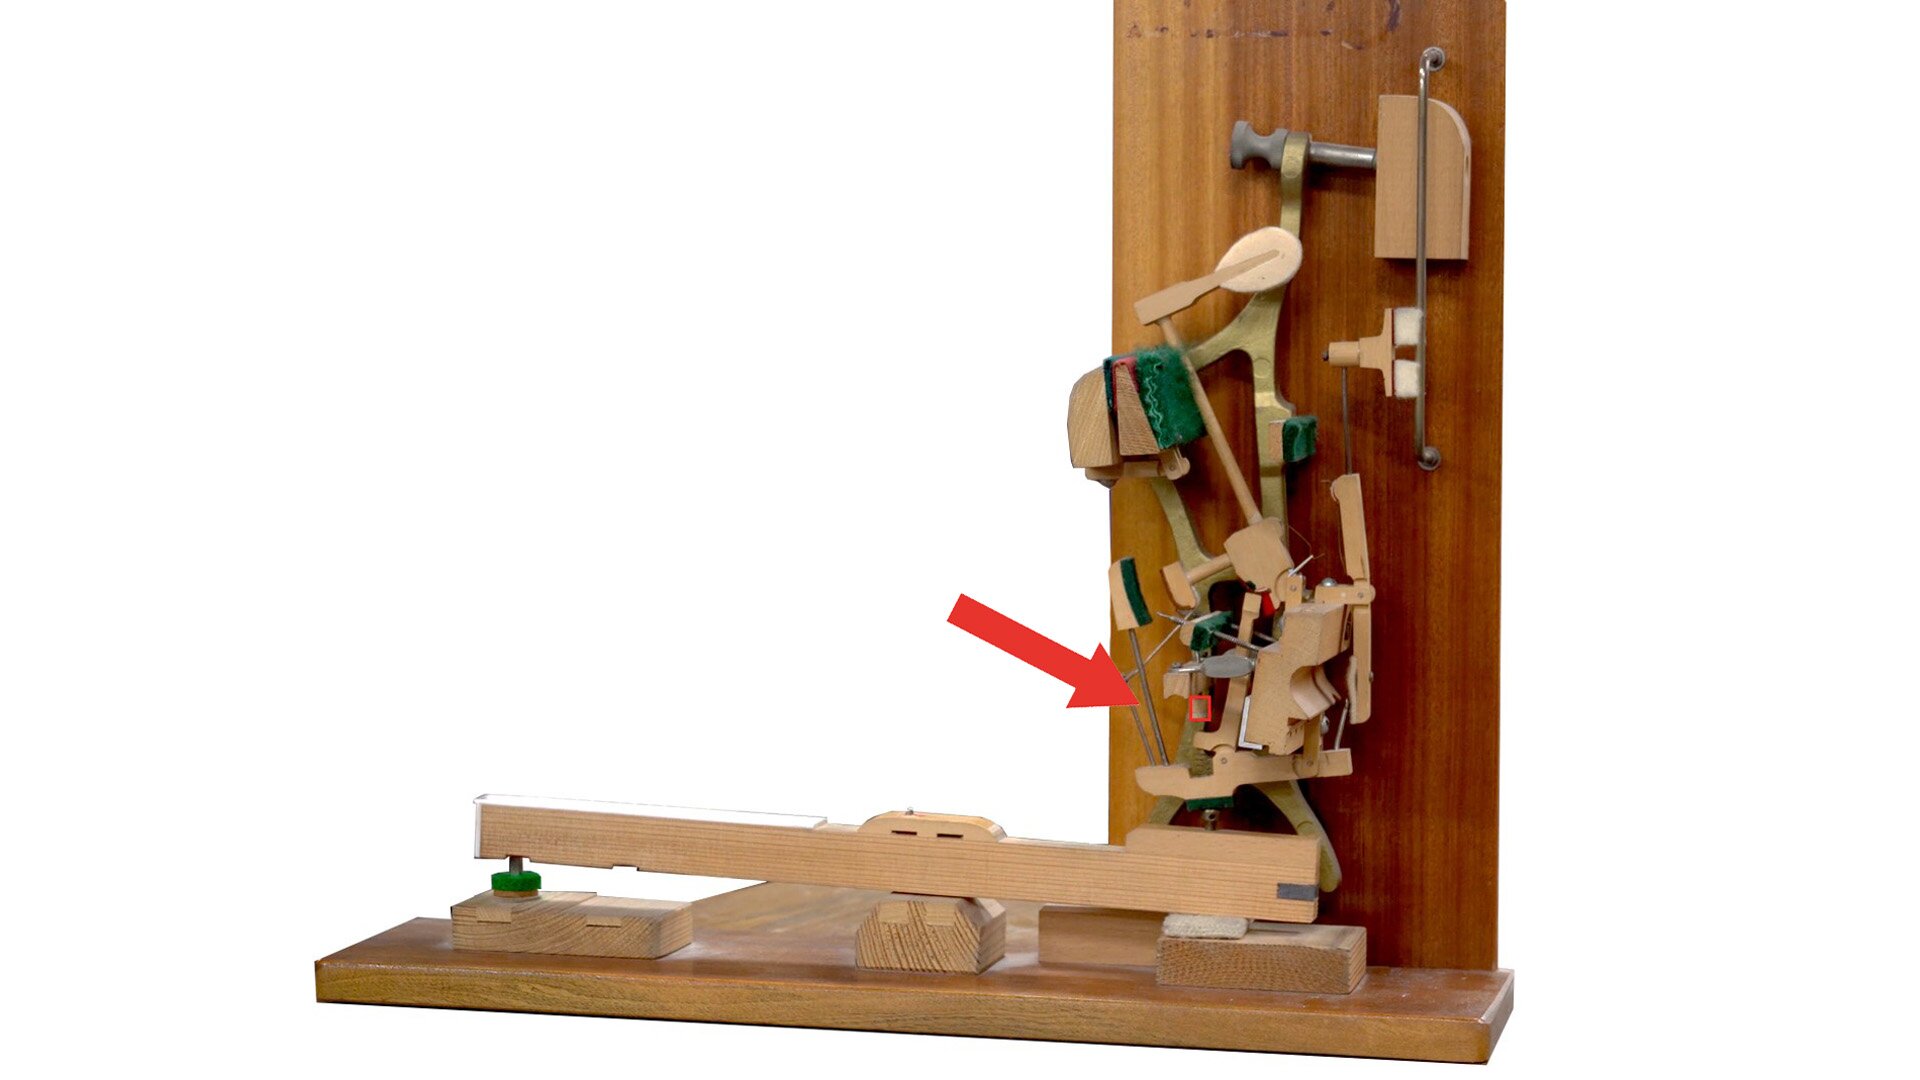 Zdjęcie przedstawia baryłkę wyzwalacza umieszczoną w mechanizmie pianinowym. Czerwona strzałka wskazuje jej lokalizację. 